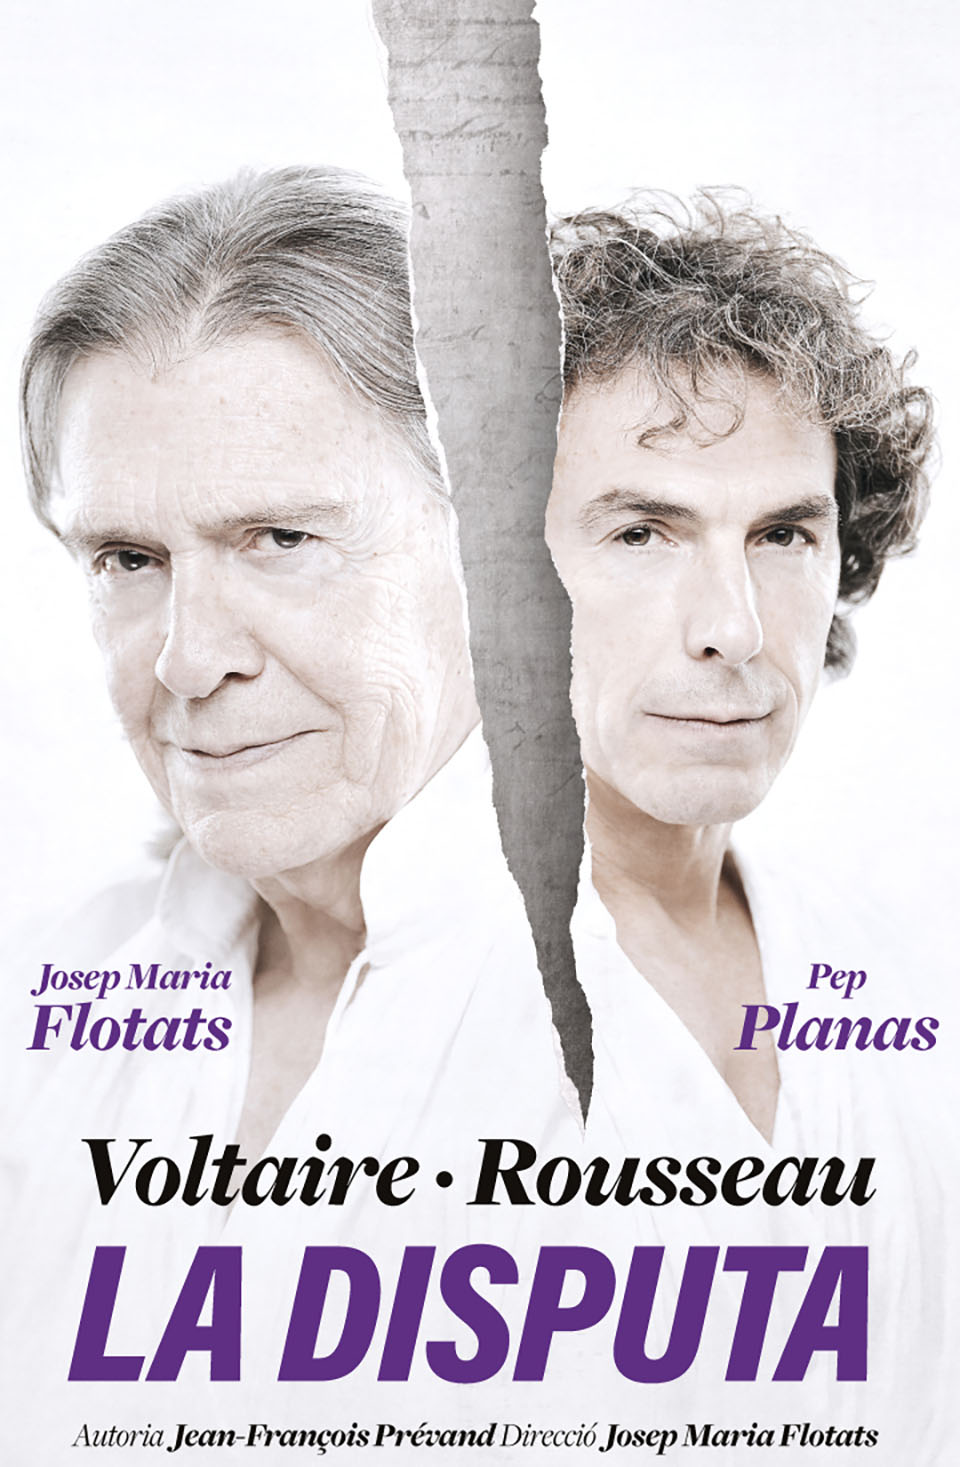 El IVC presenta ‘Voltaire/Rousseau La Disputa’ en el Teatro Principal de Valencia